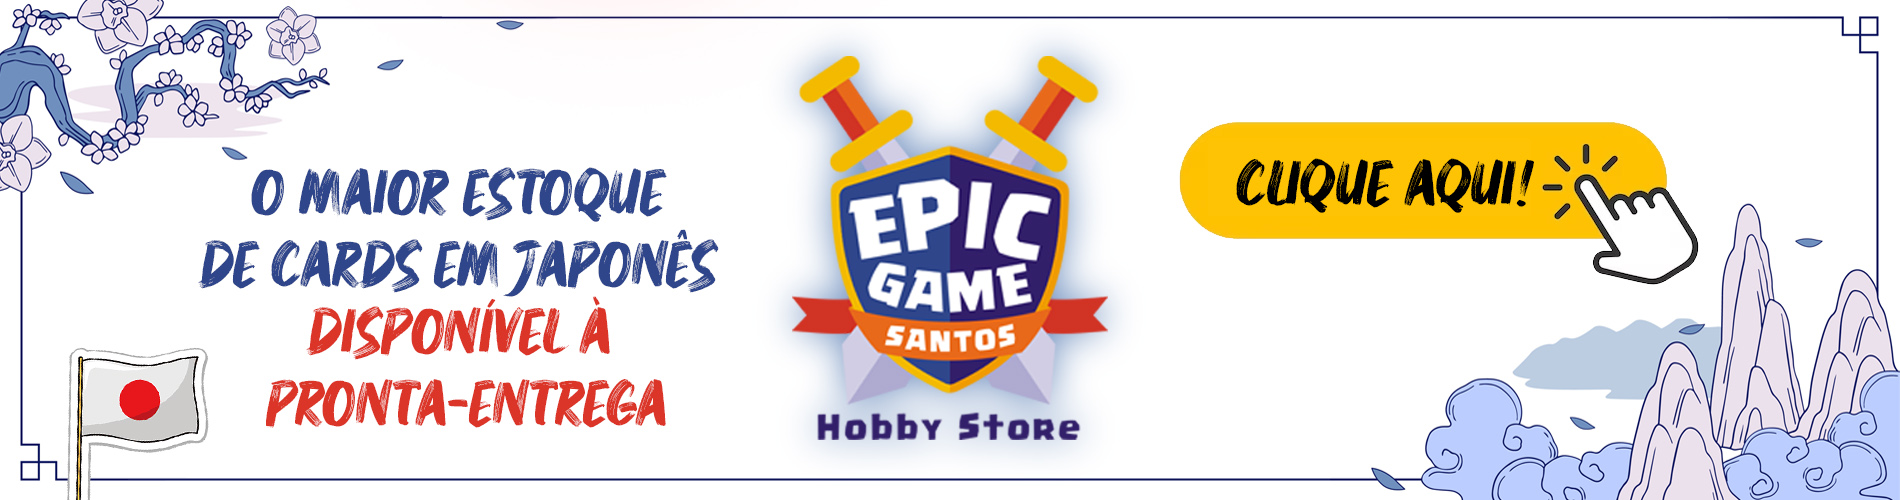 Visite o Site da Epic Game Santos